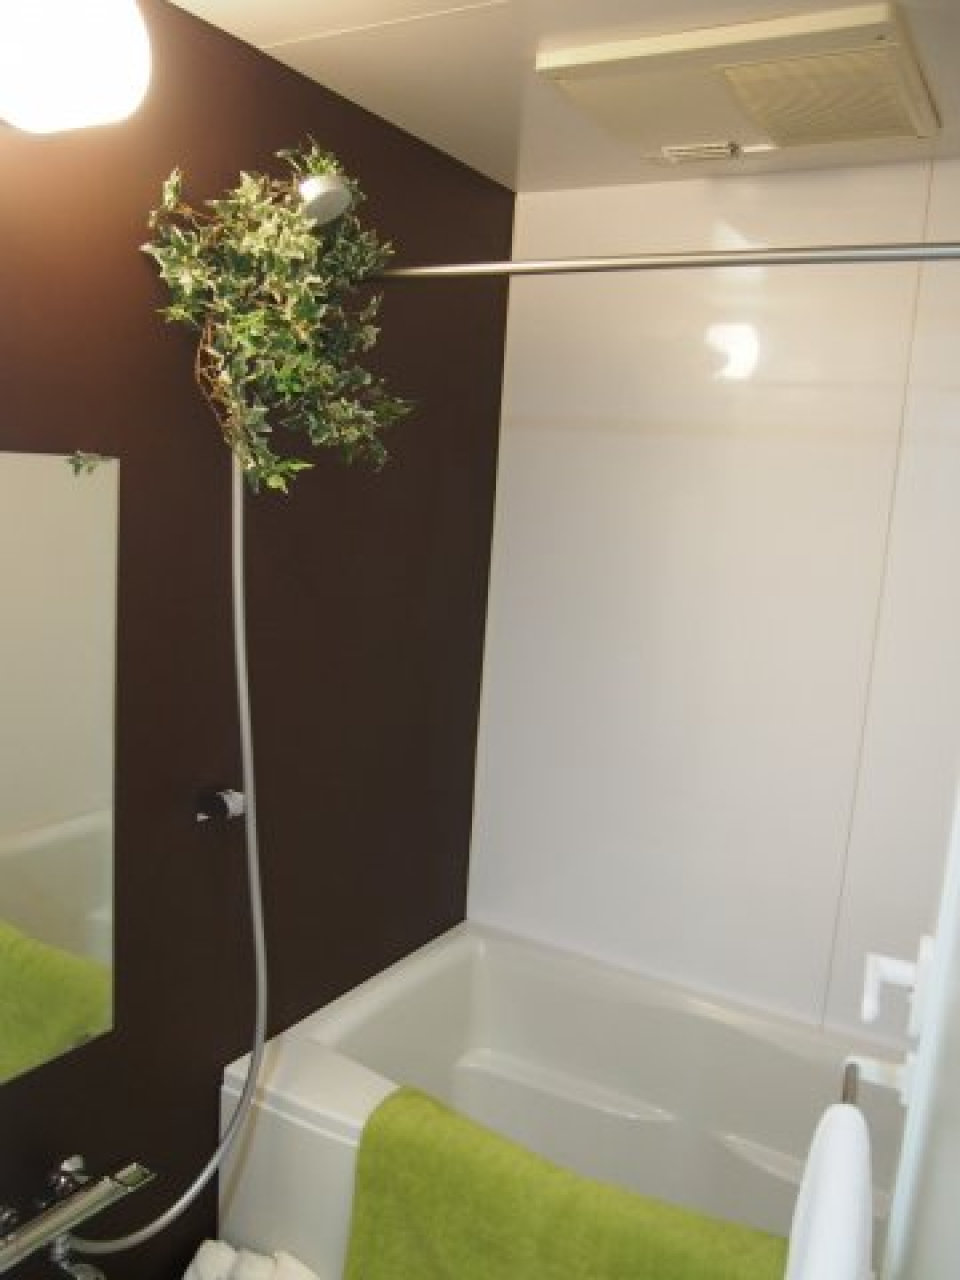 浴室乾燥機付きのバスルーム。
※葉っぱはイメージです。